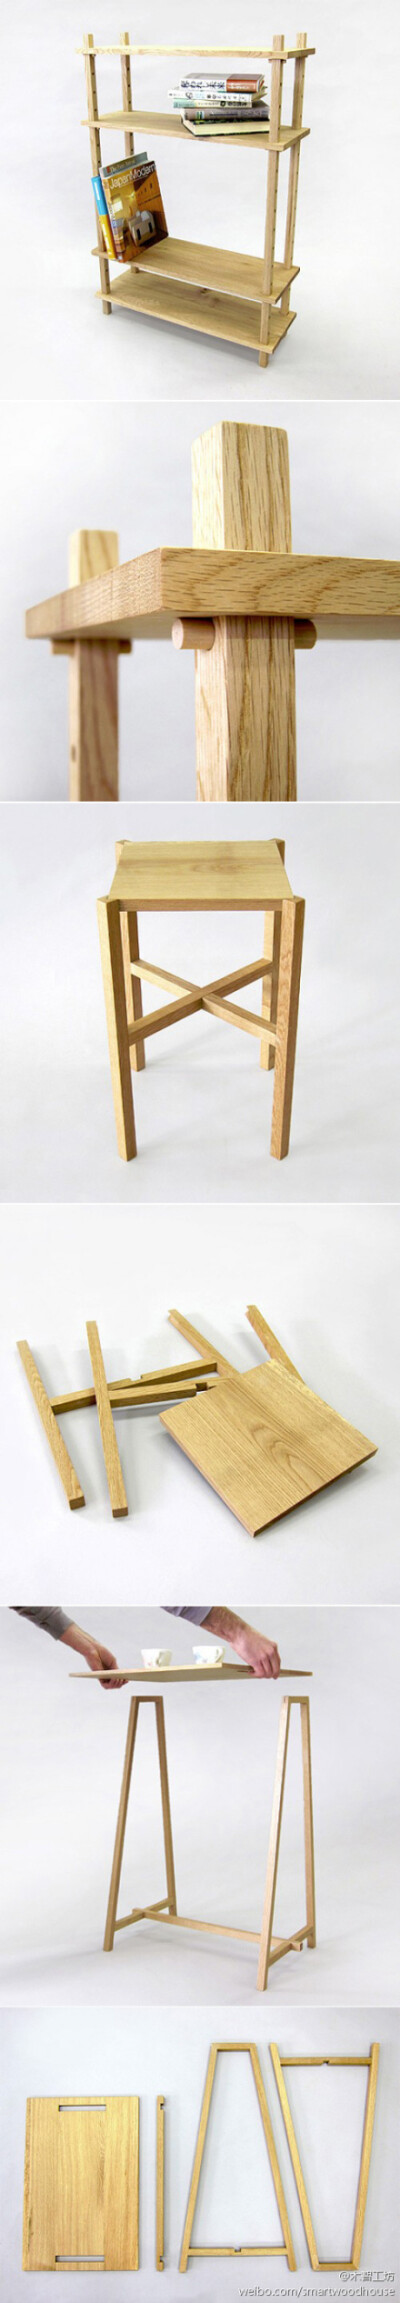 这是毕业于罗德岛设计学院的Louie Rigano设计的一组木家具，不用任何五金件就可以轻松组装。